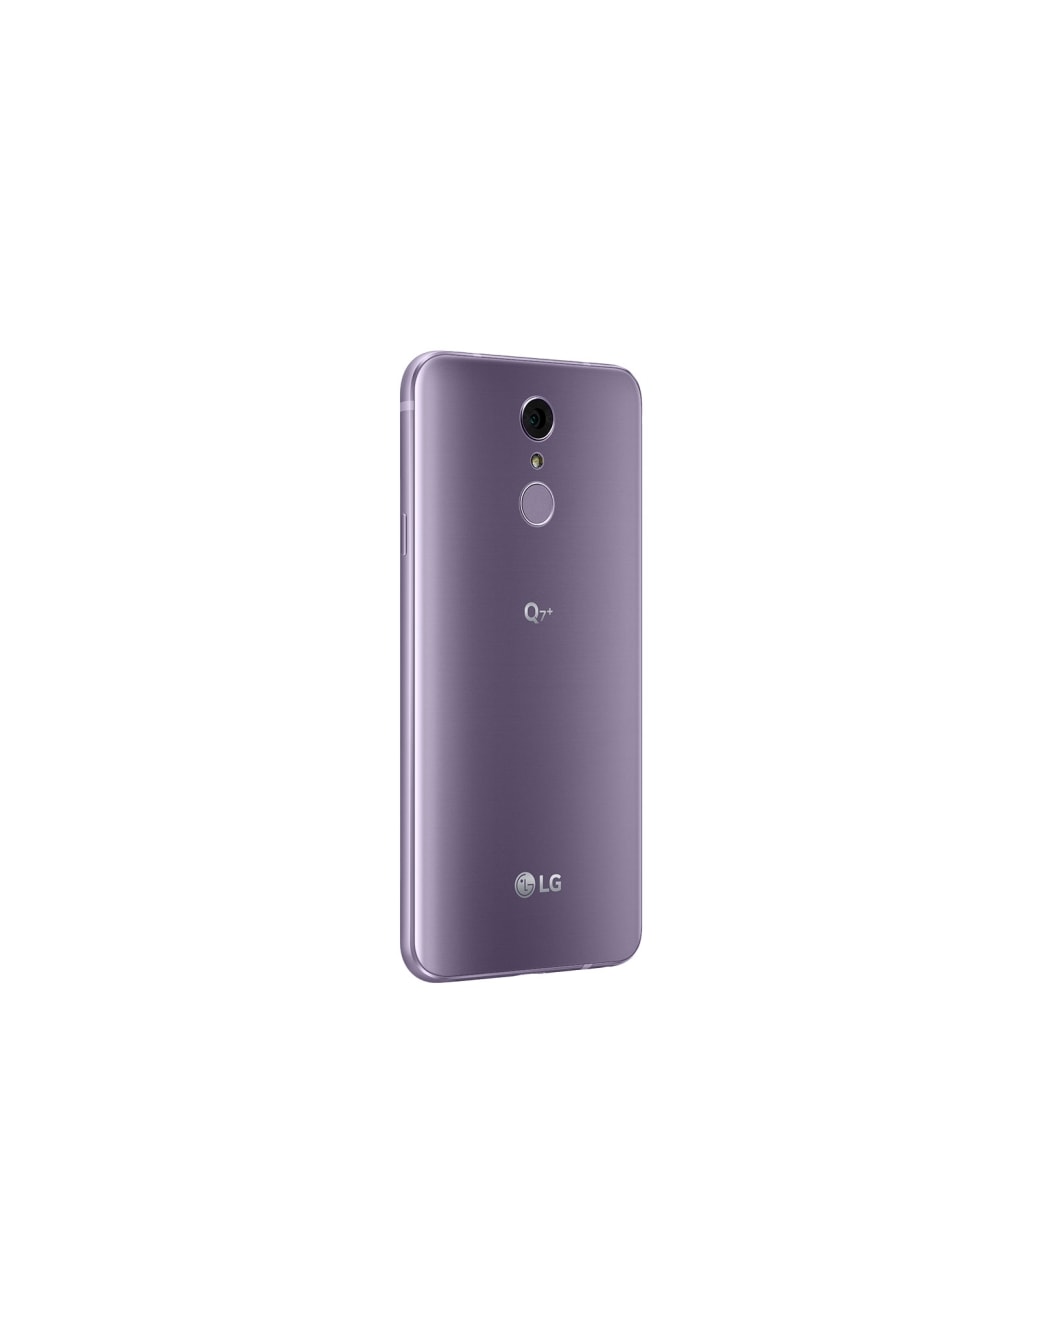 LG Q7: características, precio, ficha técnica